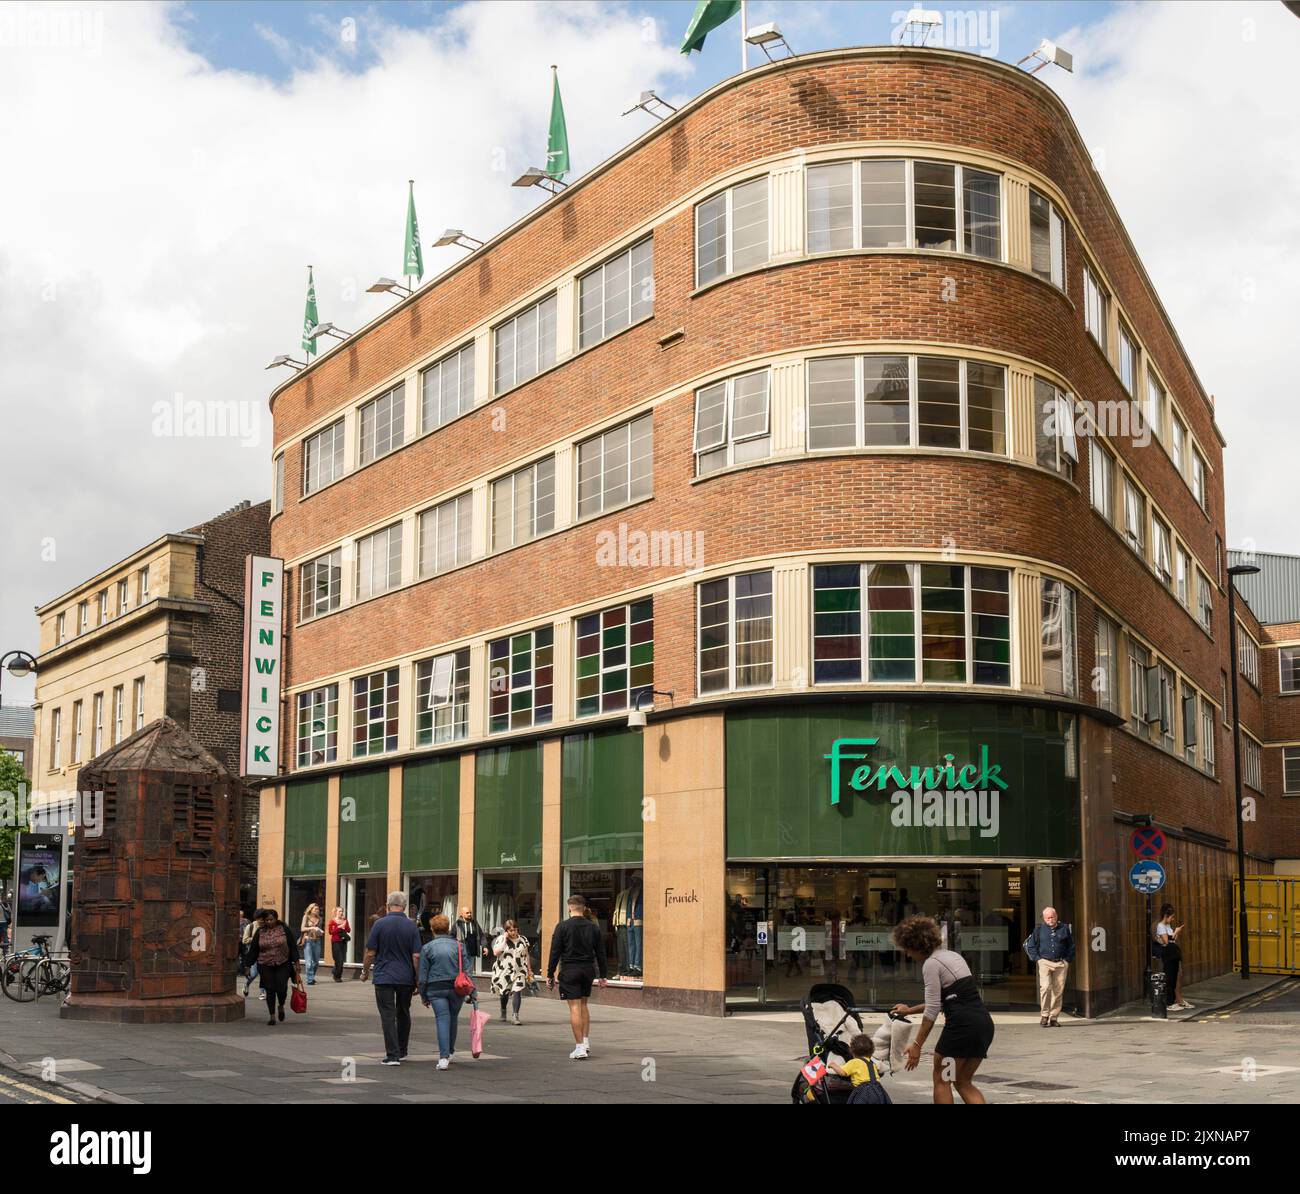 Le bâtiment Fenwick de style art déco sur Blackett Street, Newcastle upon Tyne, Angleterre, Royaume-Uni Banque D'Images